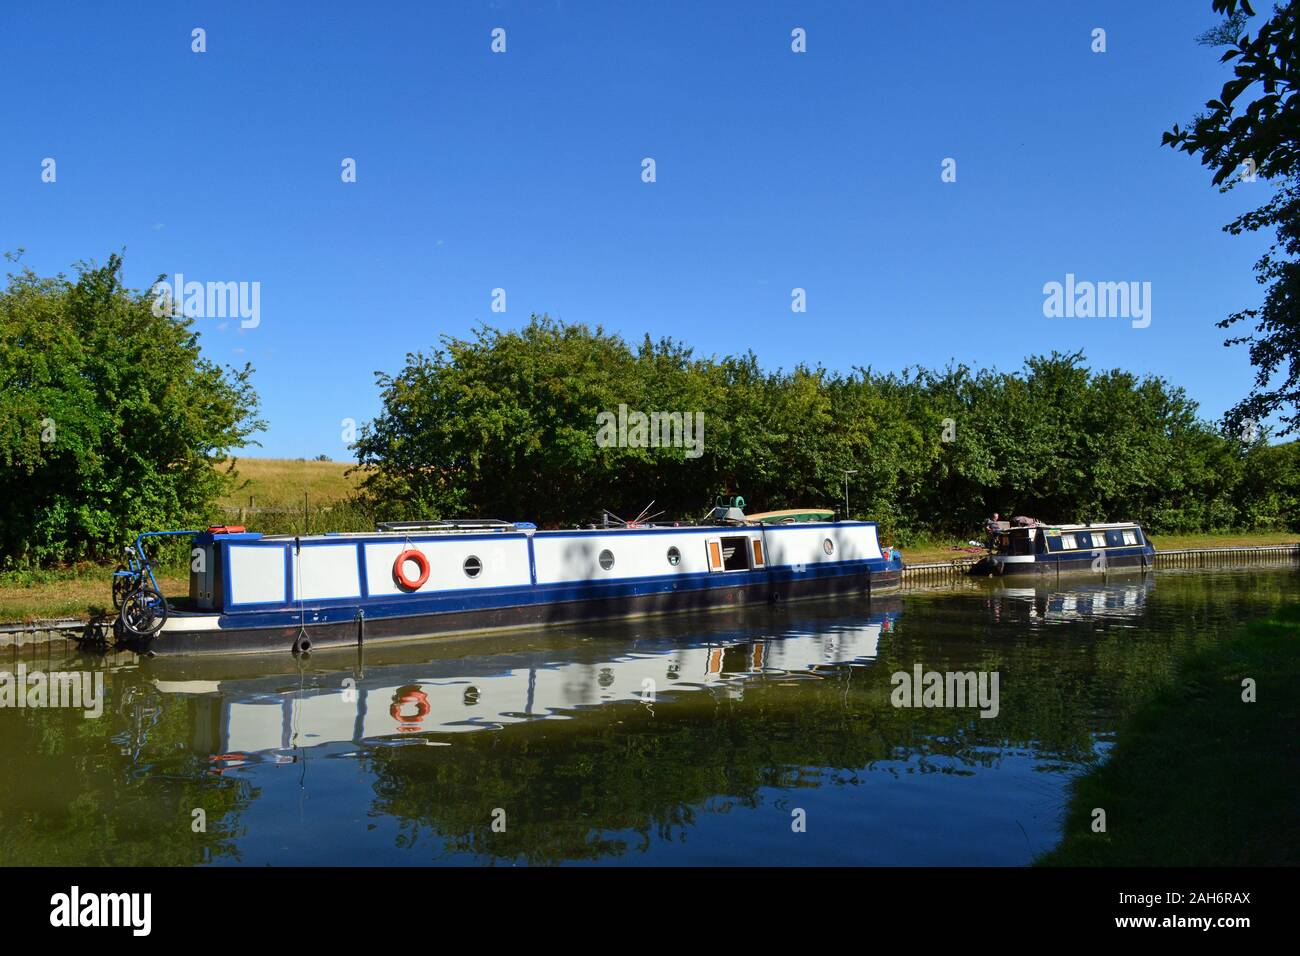 Narrowboats on the Grand Union Canal, Aylesbury Arm, Buckingamshire, UK Stock Photo